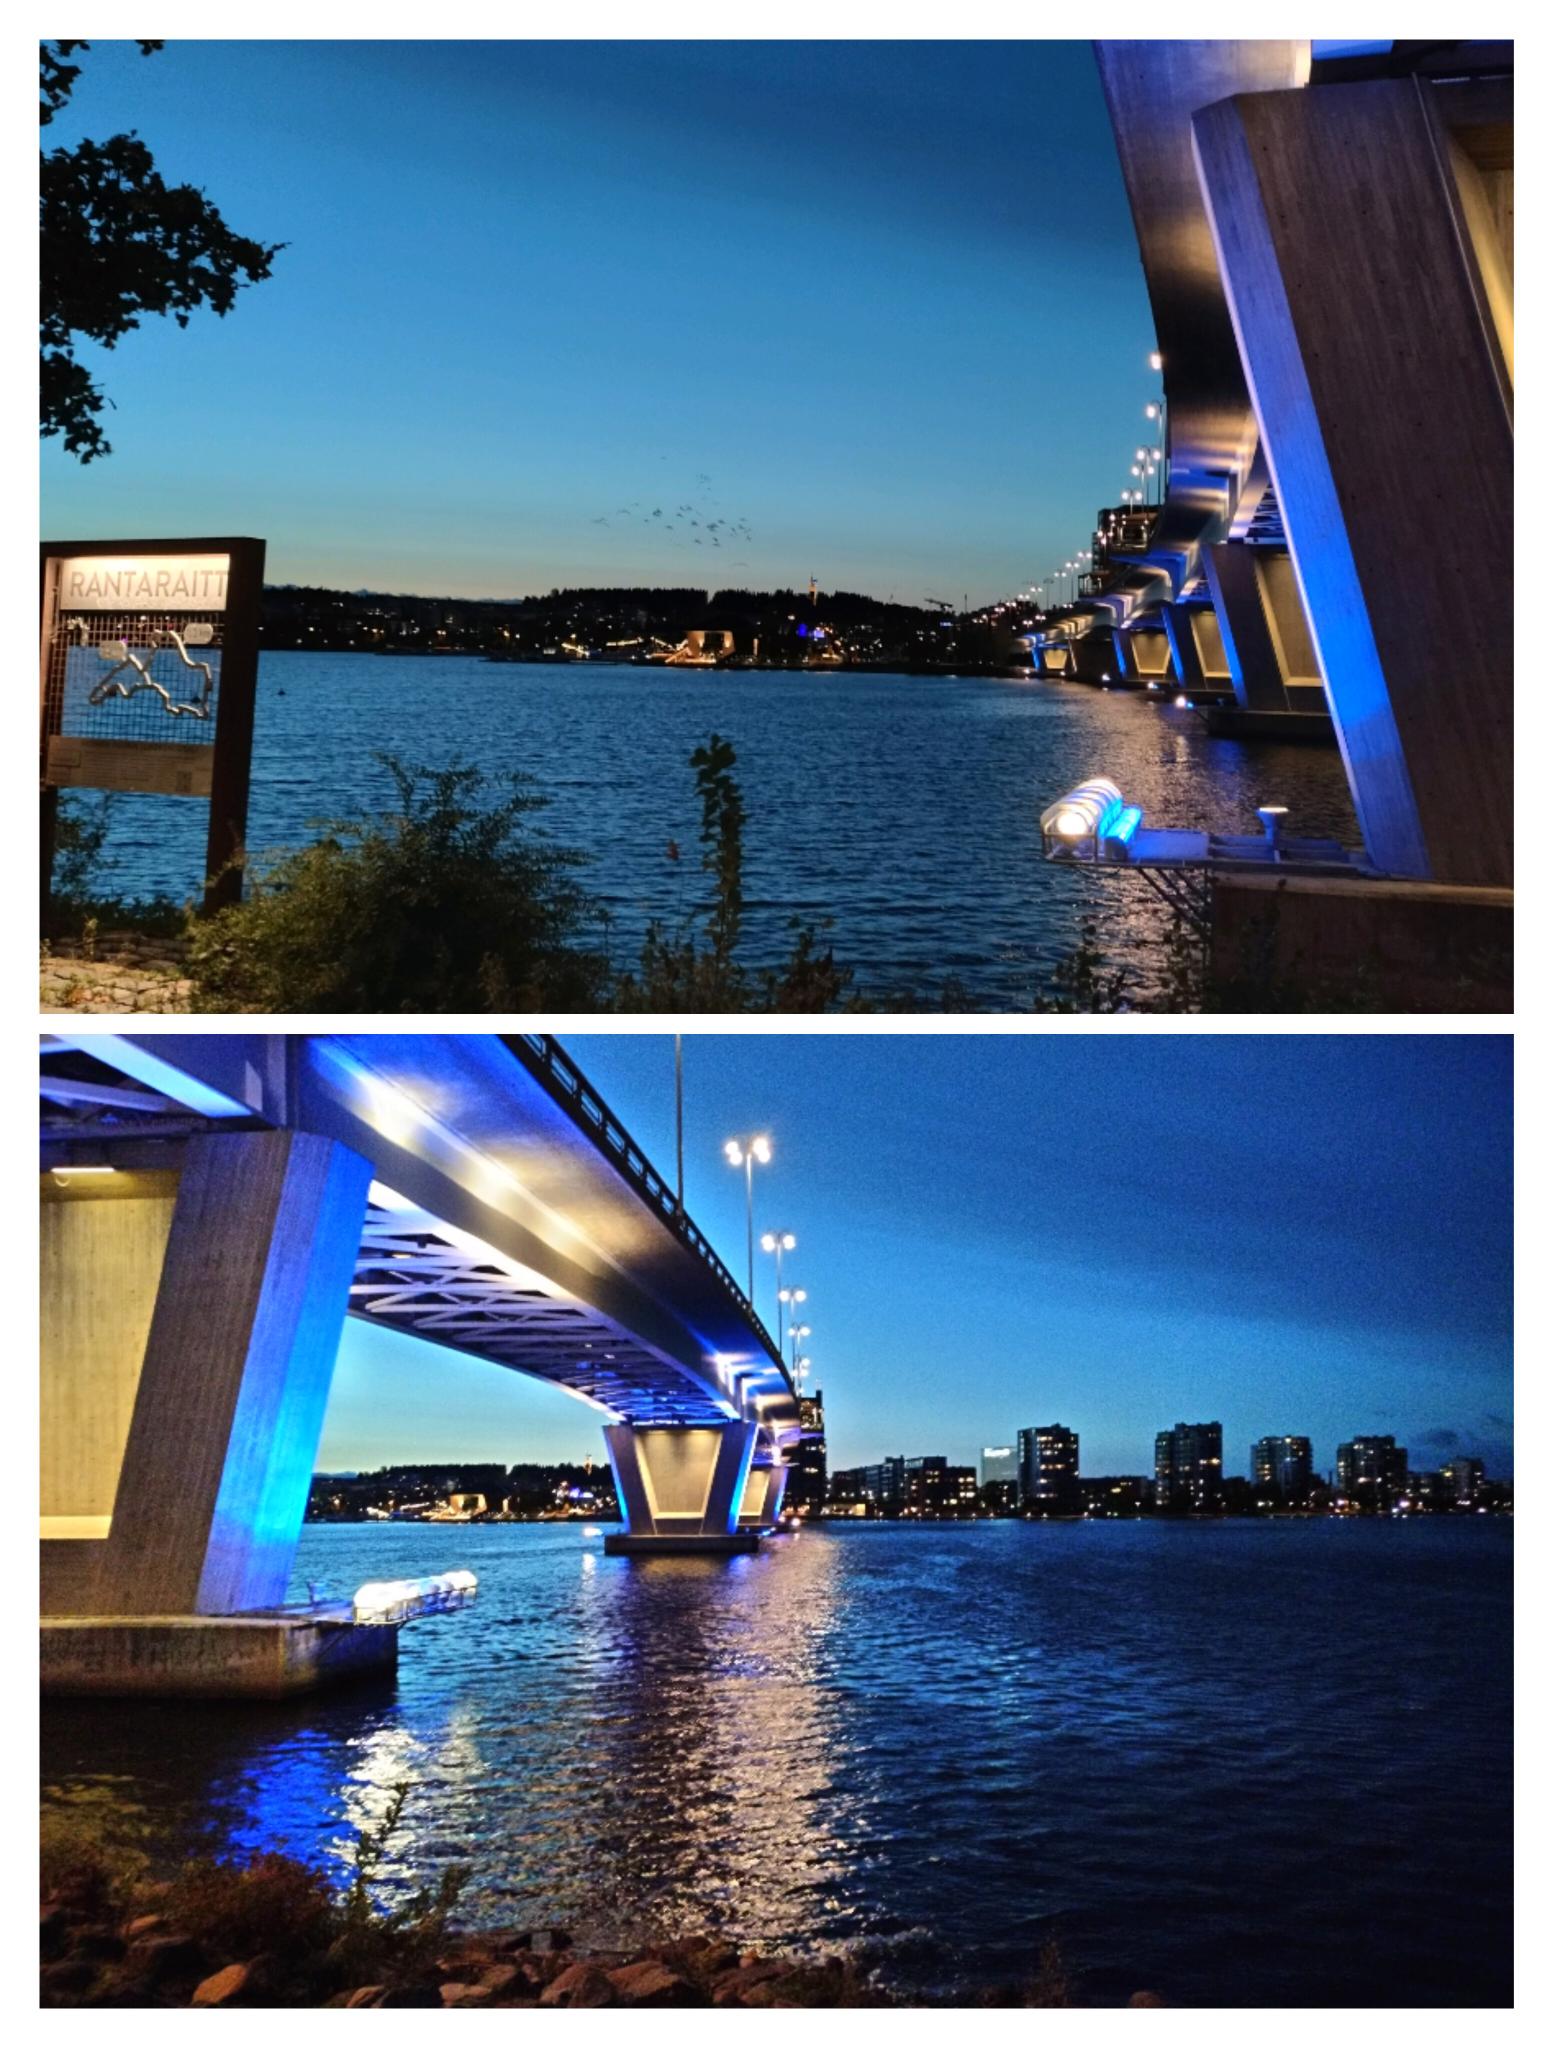 Eine beleuchtete Brücke über See in der Nacht.